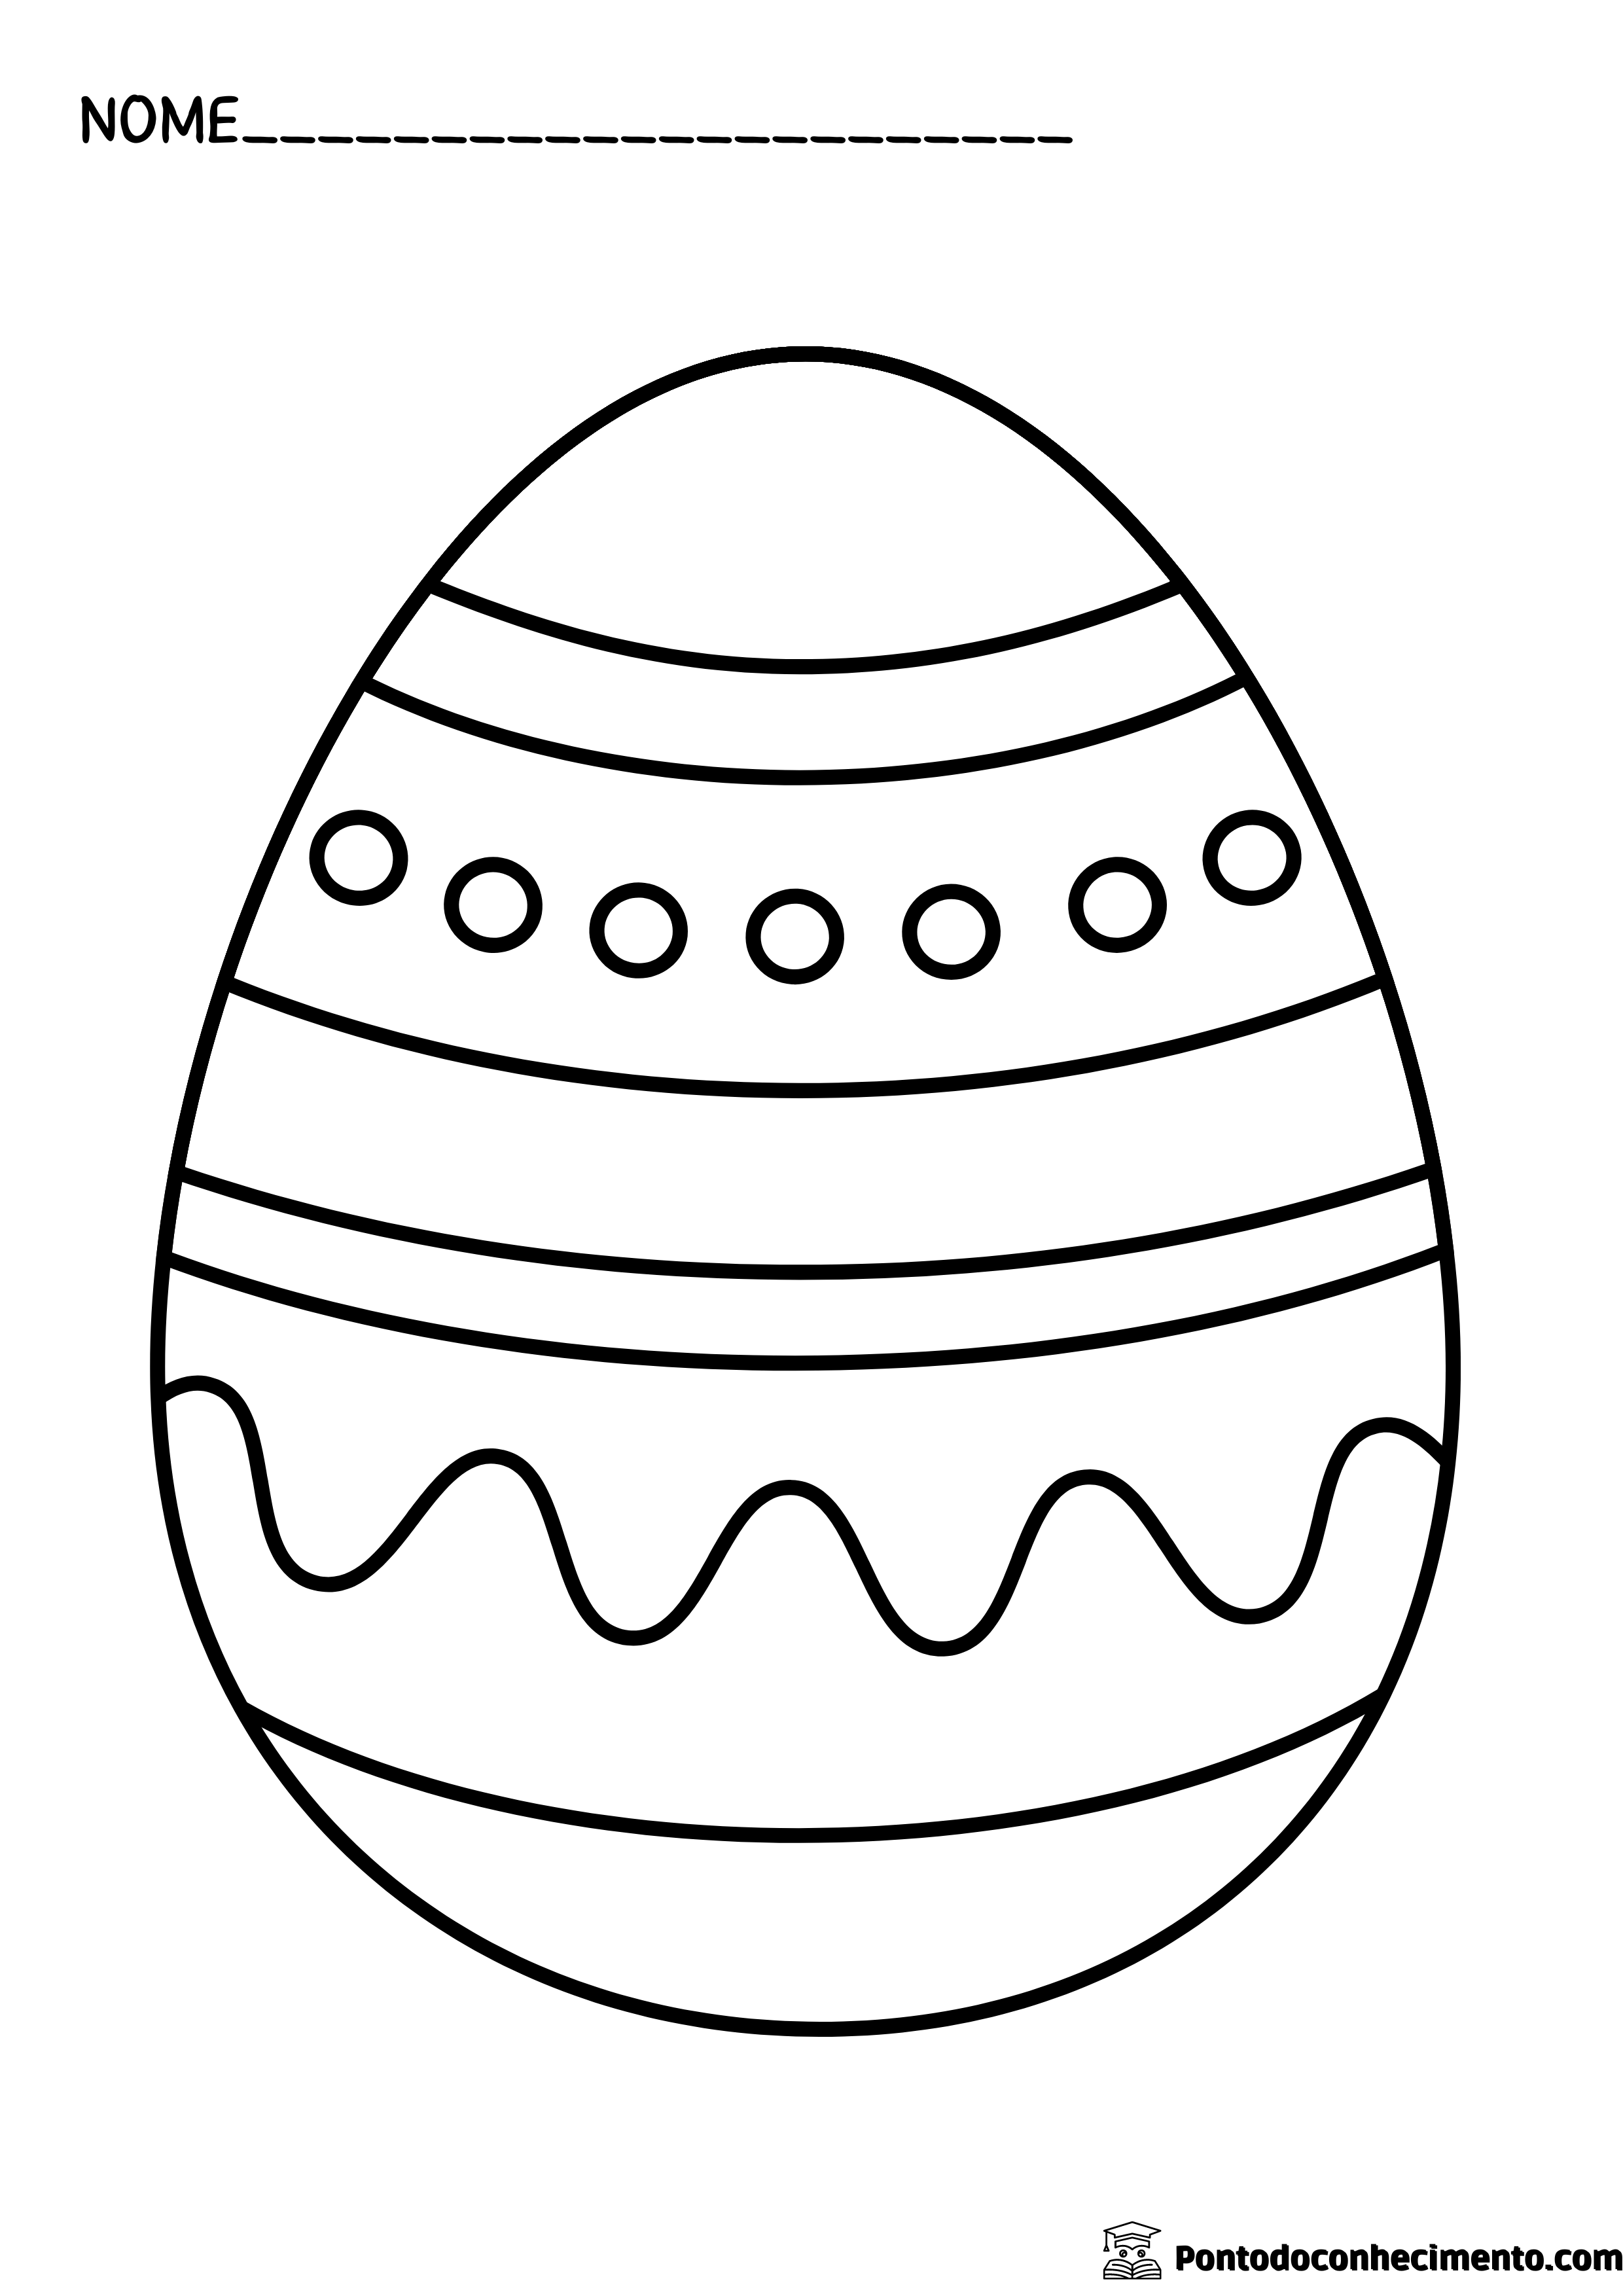 Desenhos infantis para colorir: ovo de pascoa